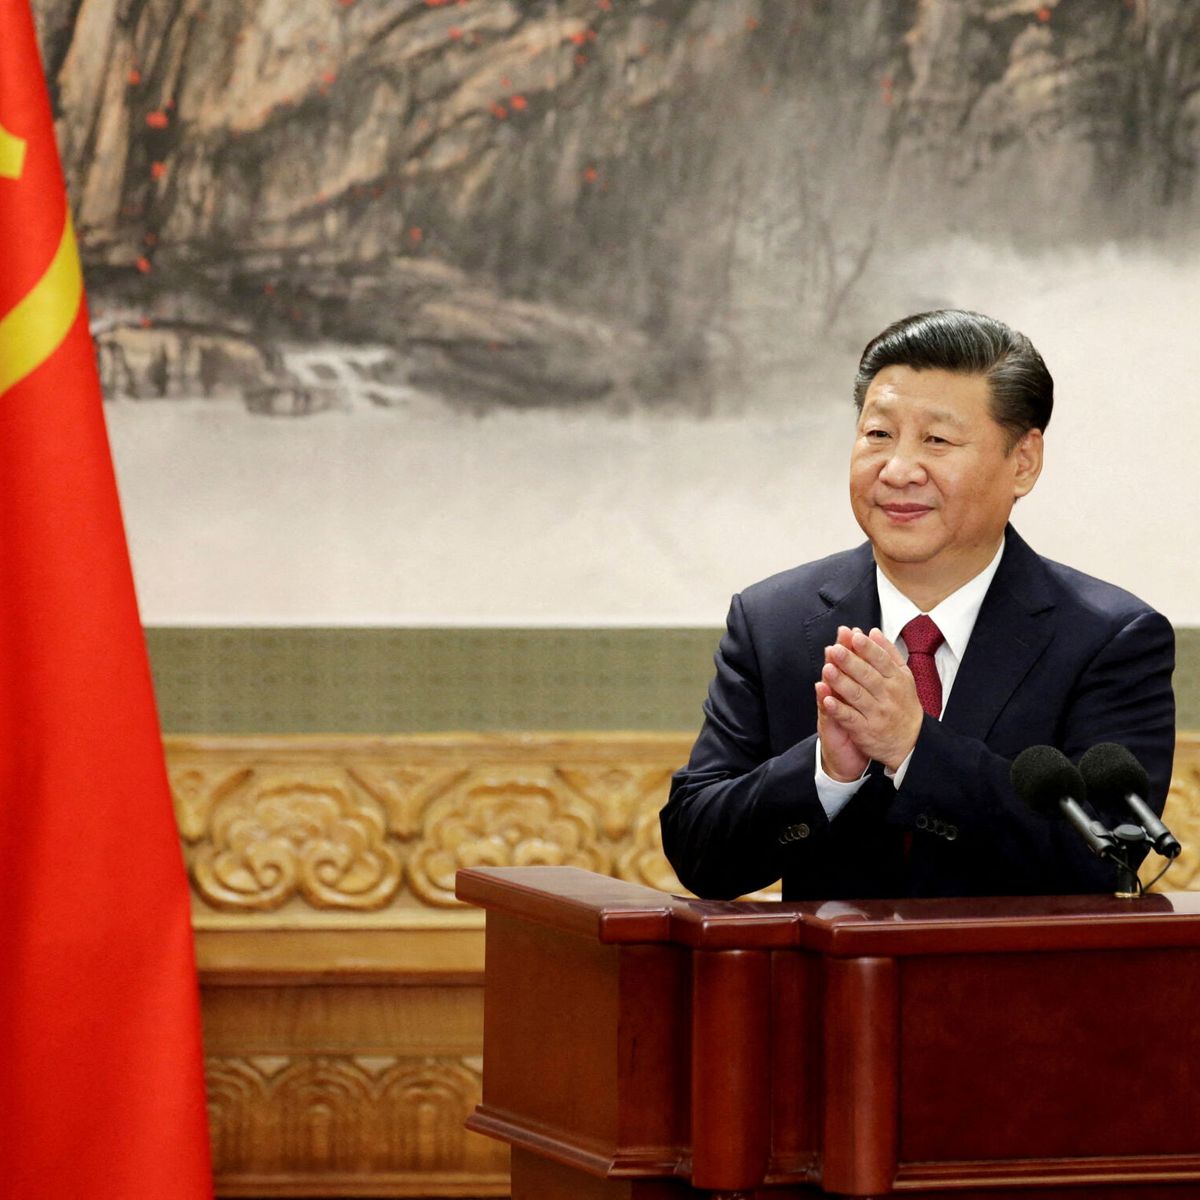 Qué quiere Xi Jinping? La pregunta que pocos pueden contestar